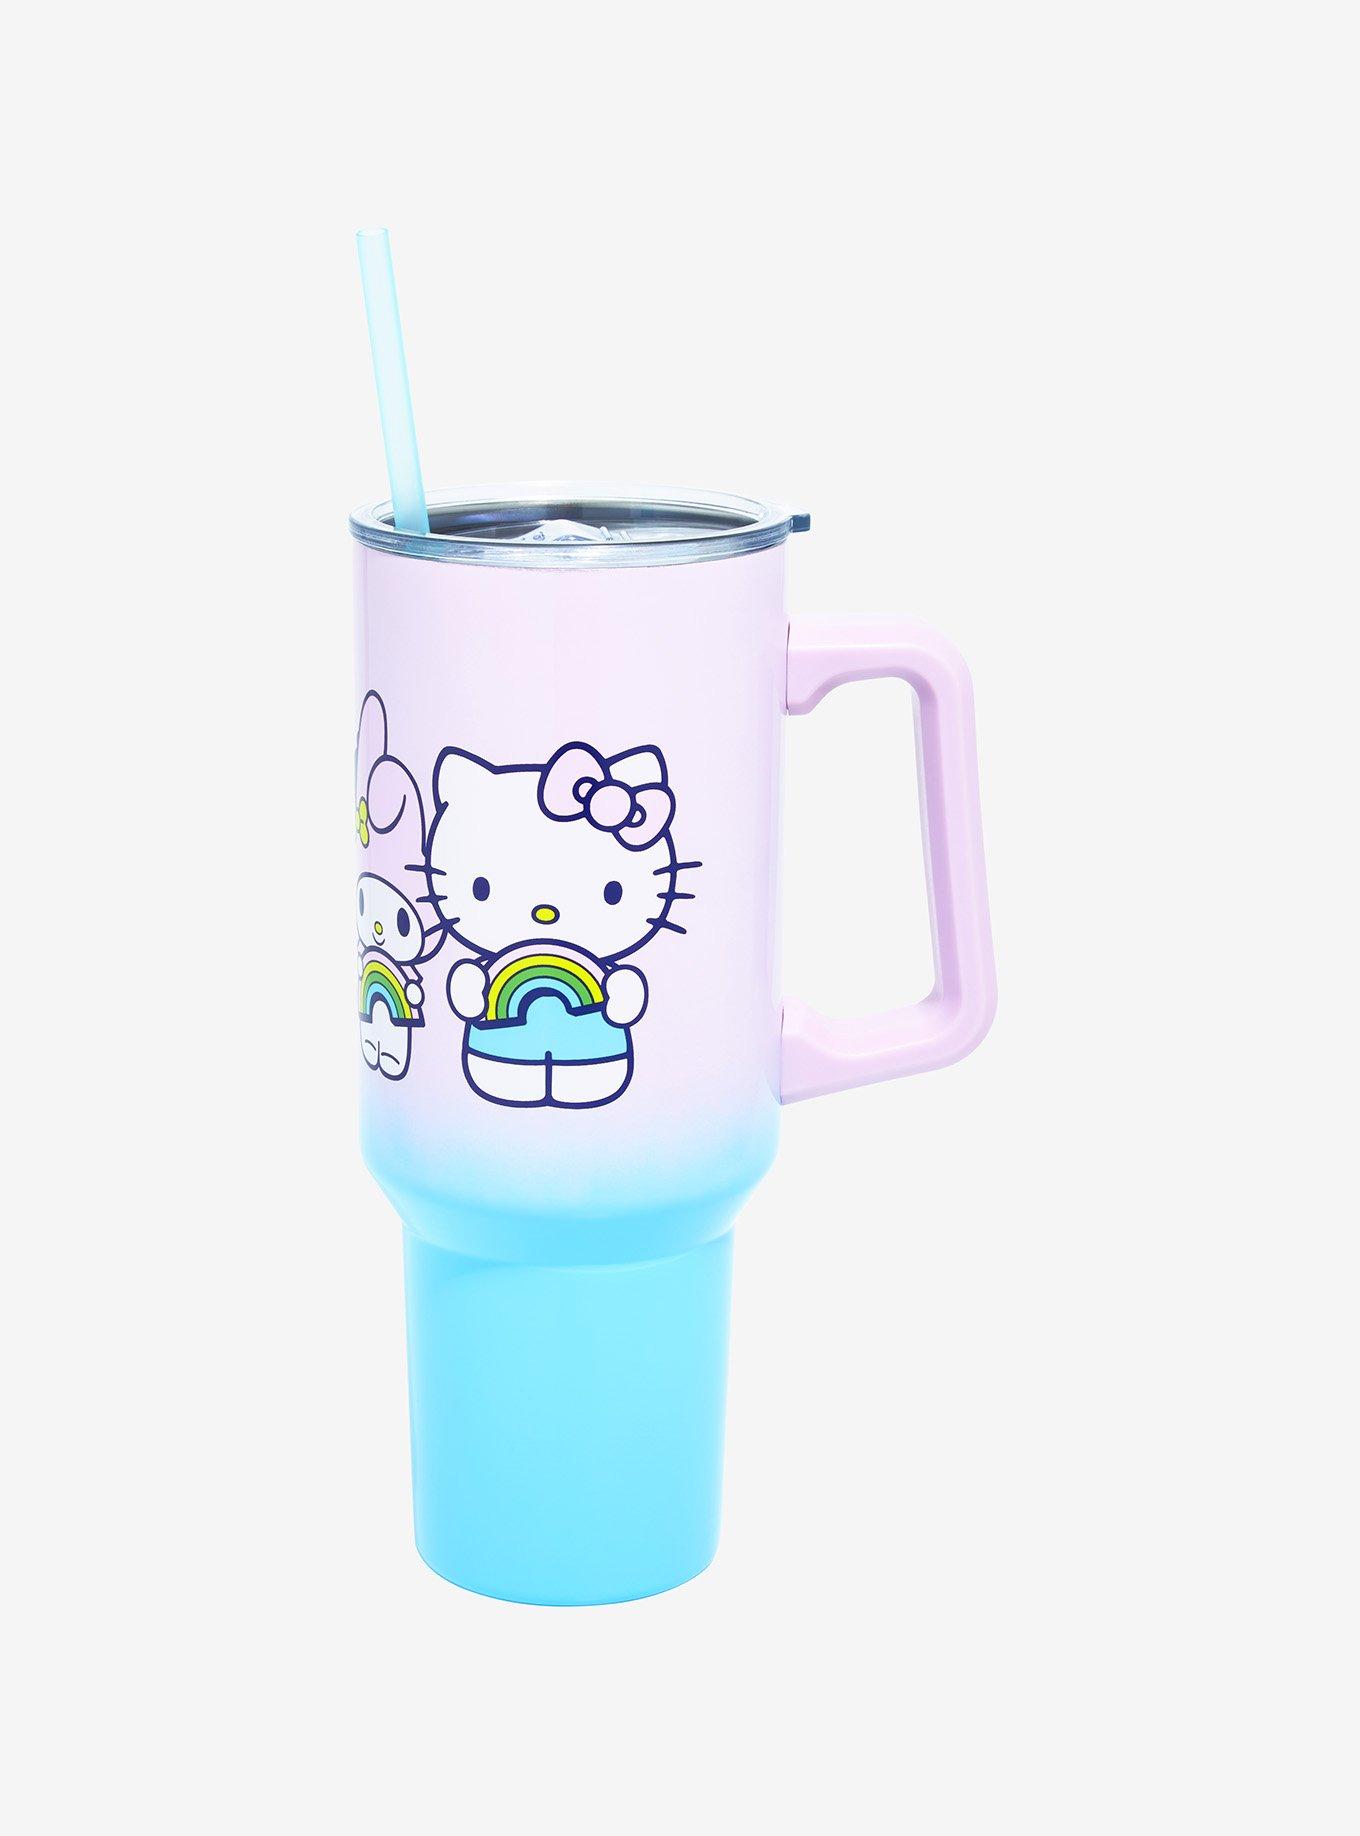 Sanrio Hello Kitty Tumbler 40 oz Stanley tumbler - Depop